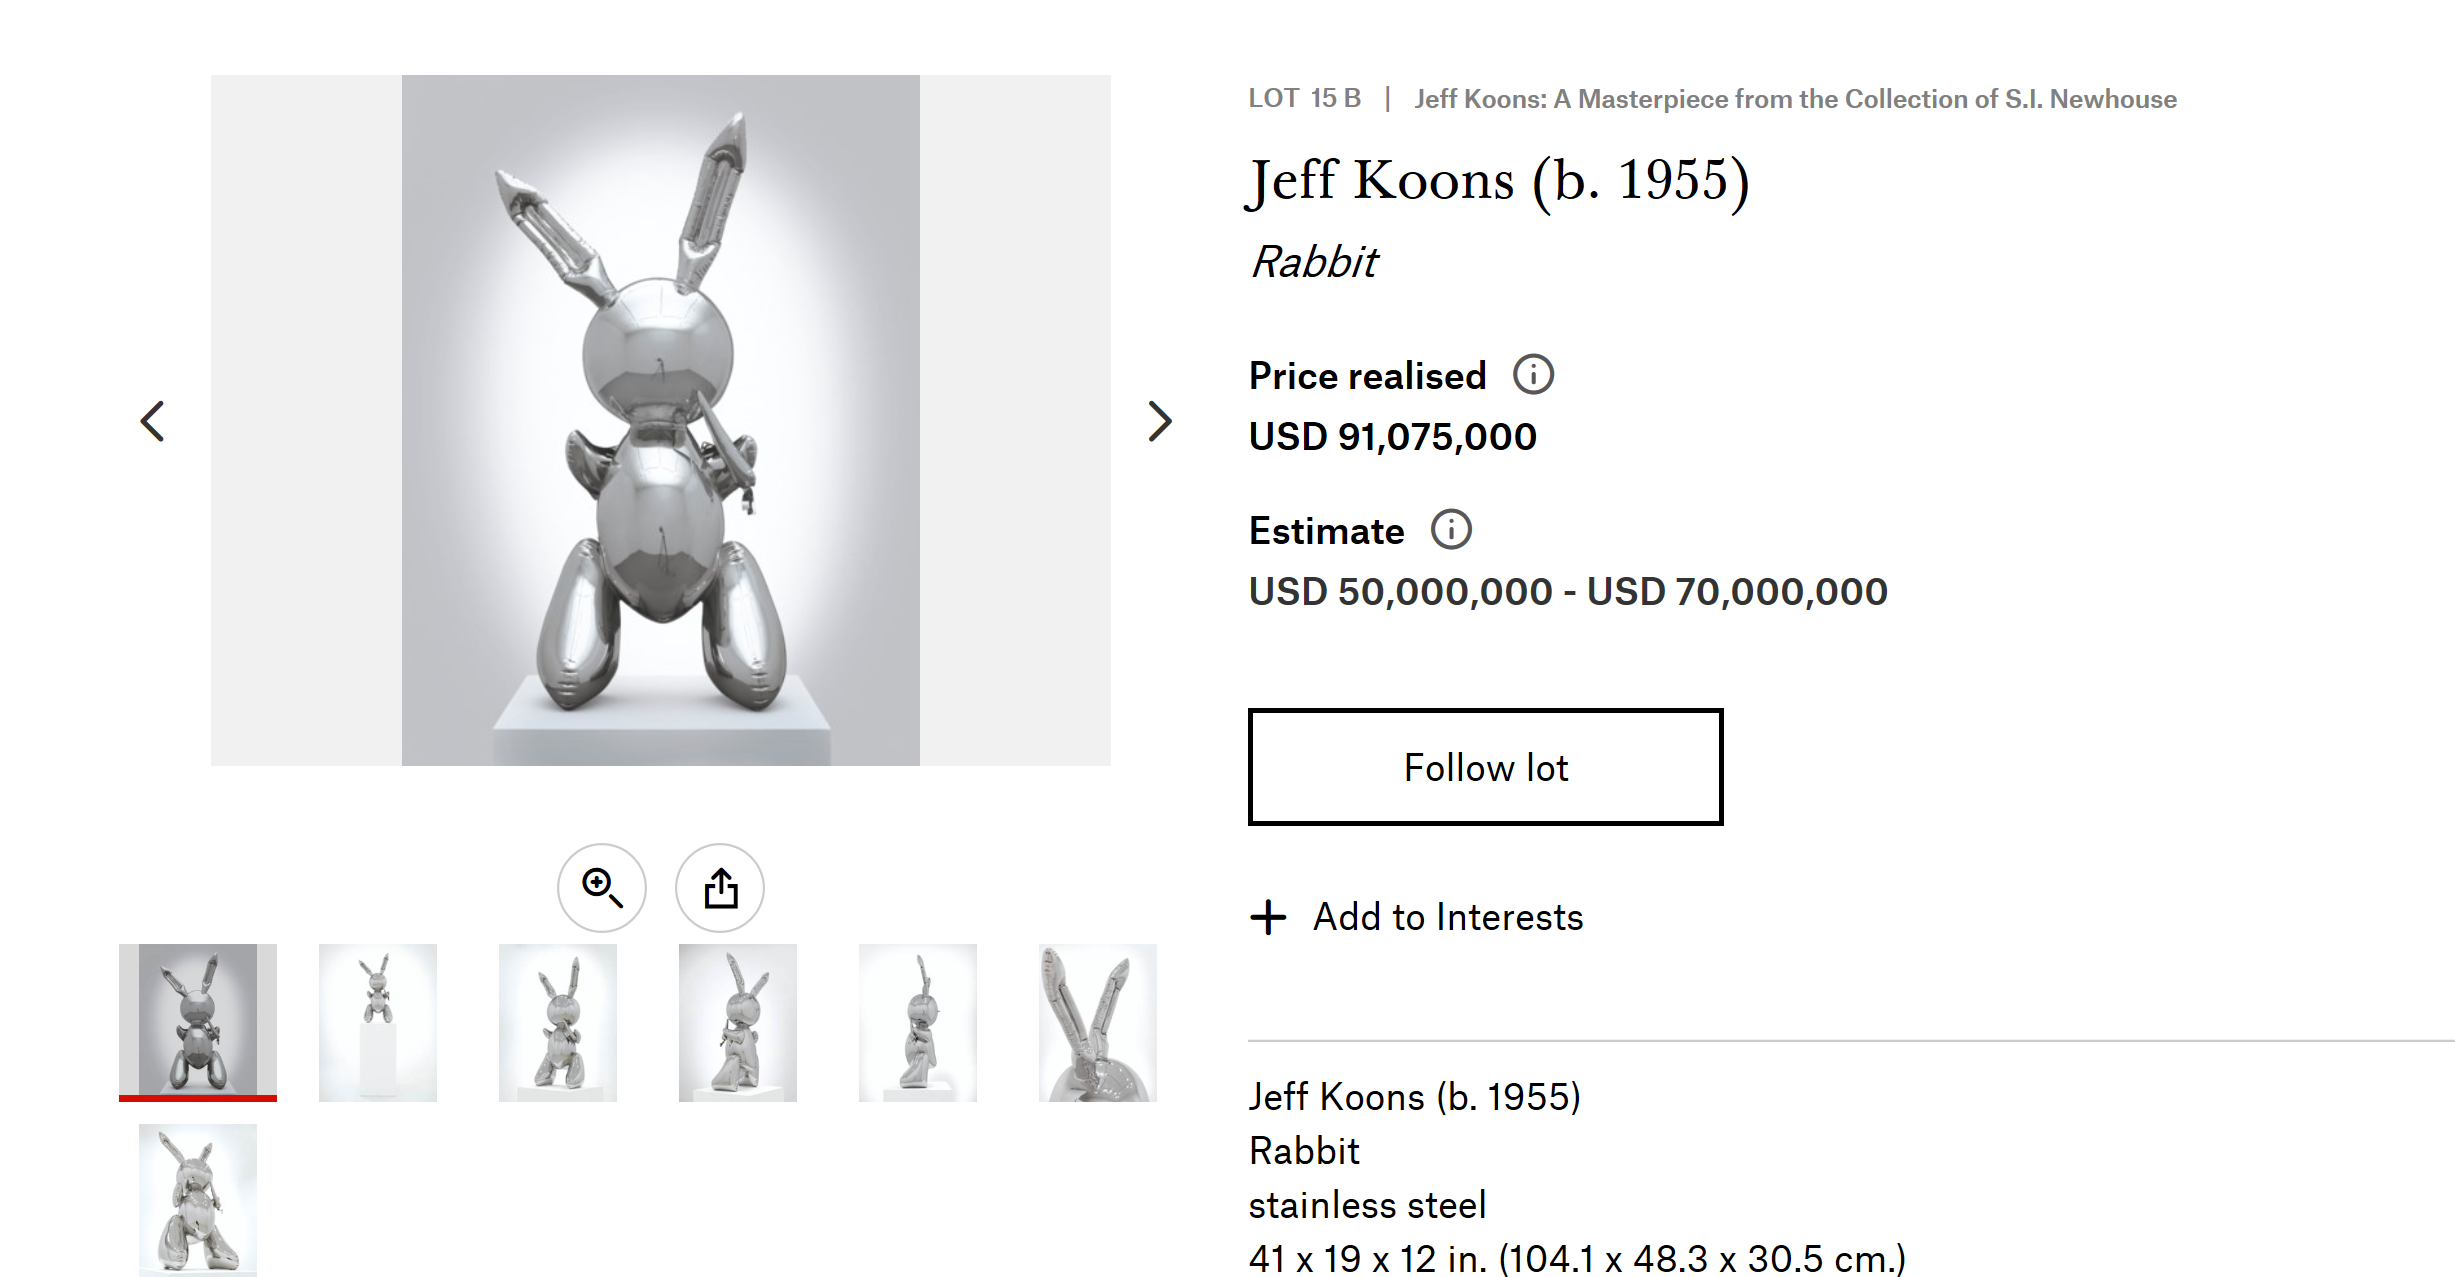 Jeff Koons (b. 1955) Rabbit